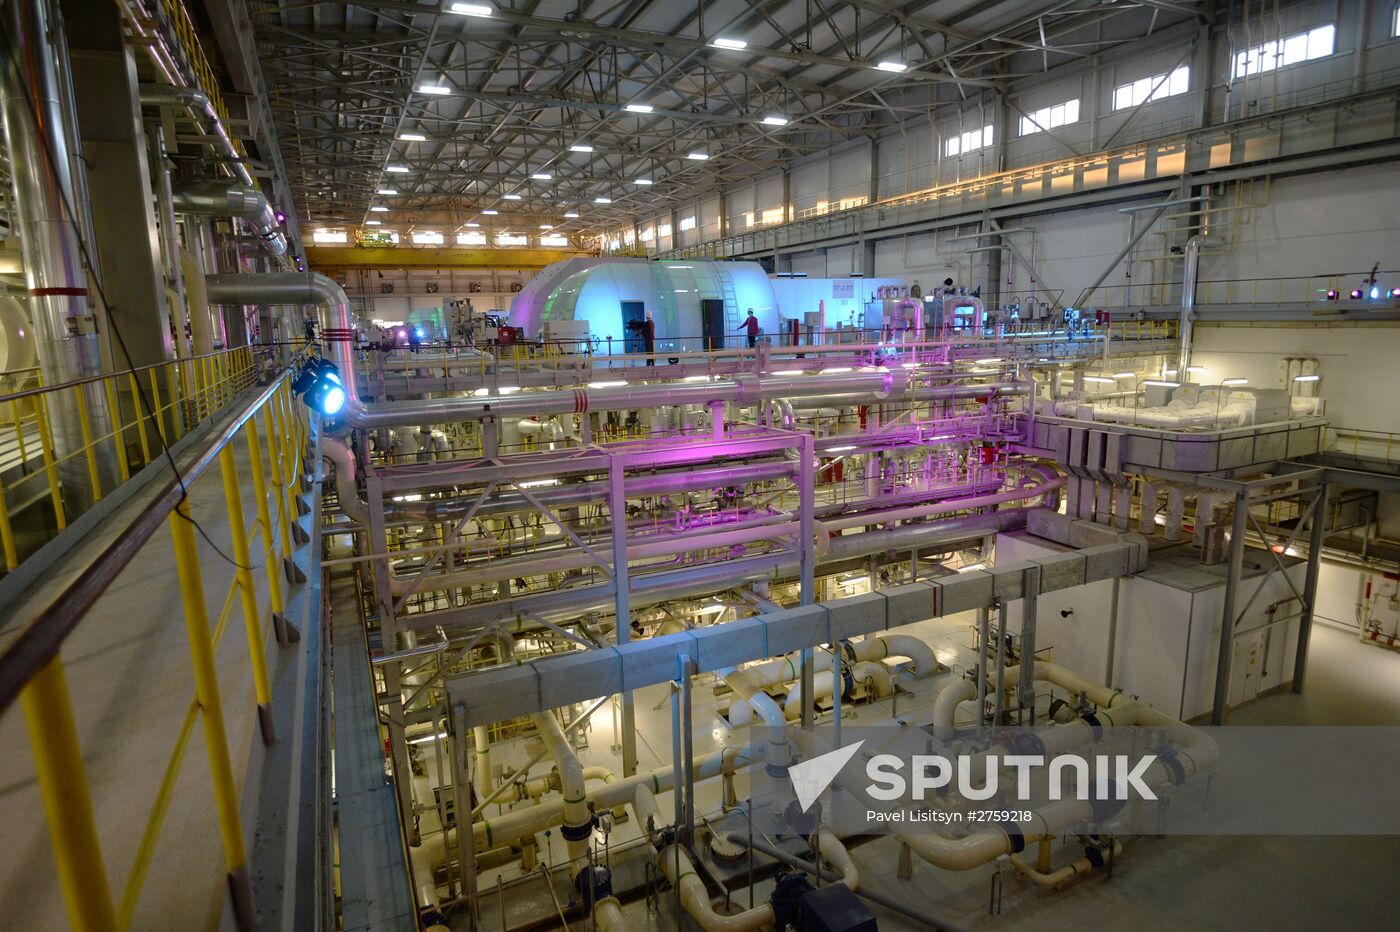 Ceremony of launching new combined-cycle turbine in Nizhnyaya Tura